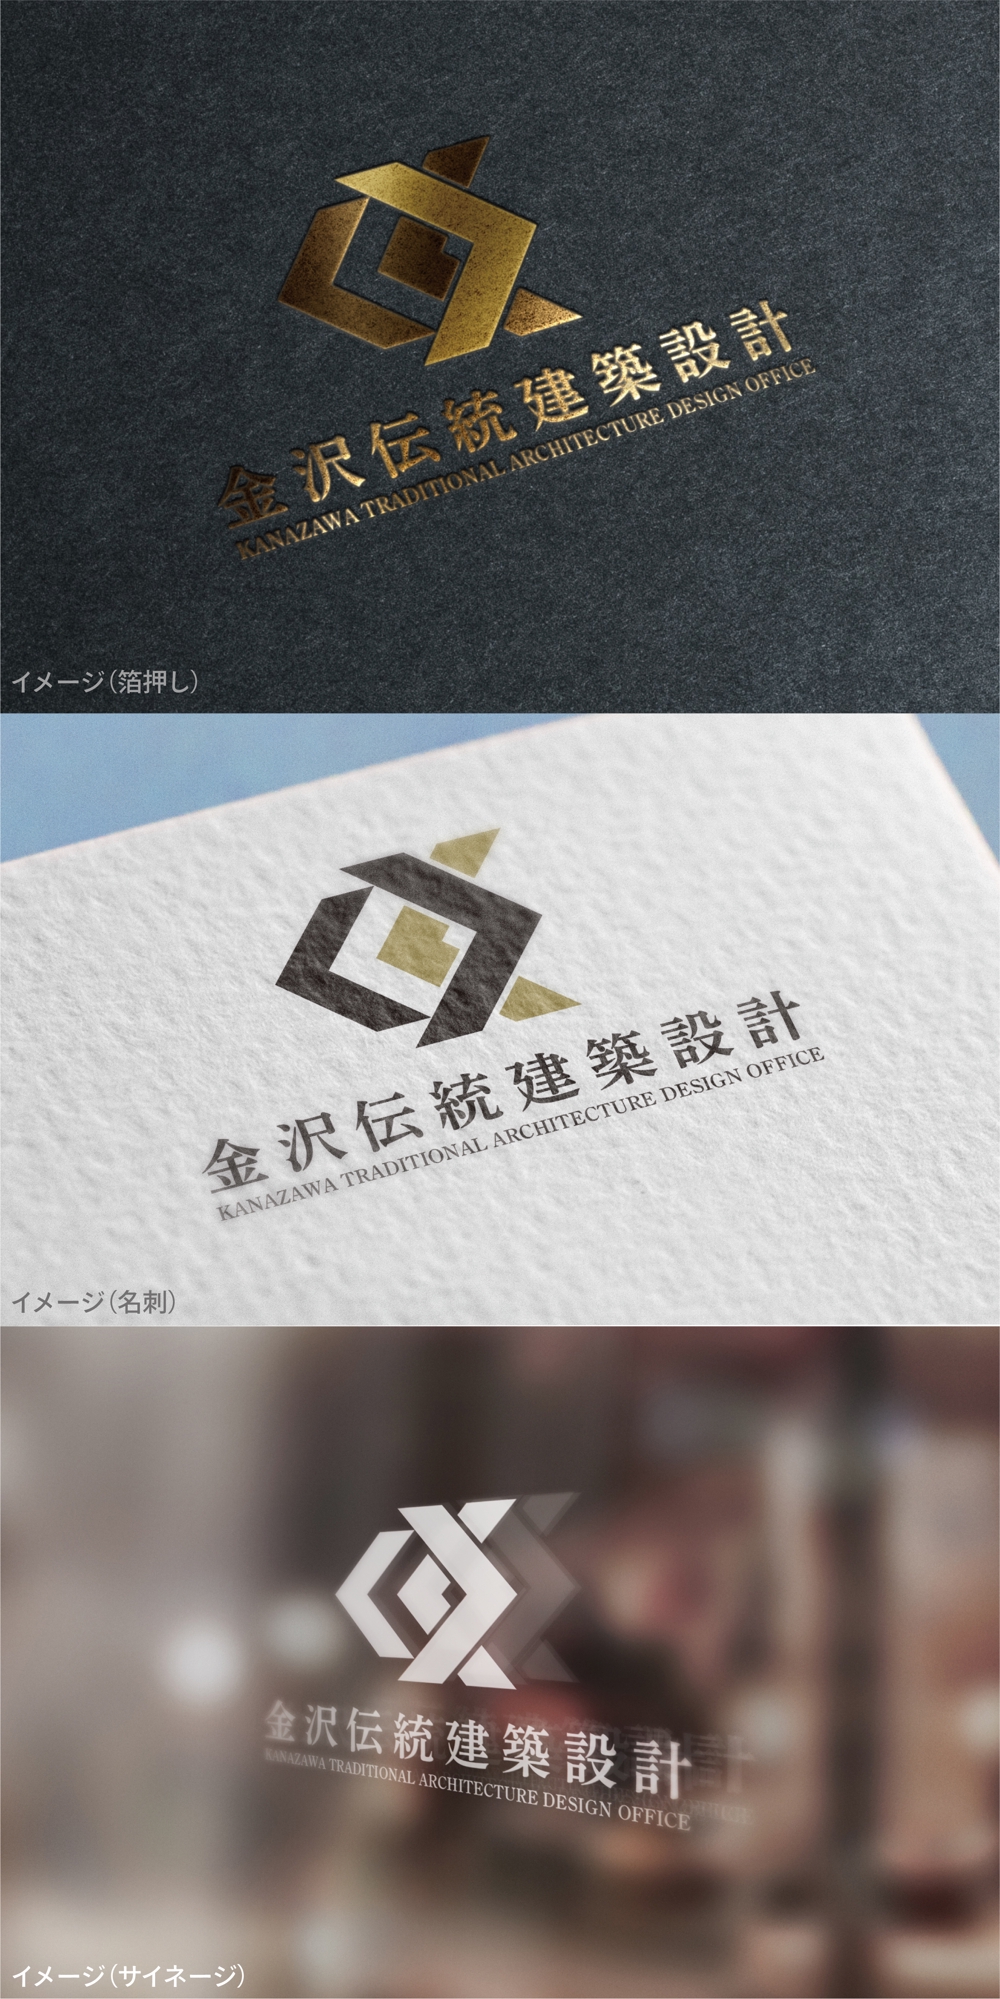 金沢伝統建築設計_logo01_01.jpg